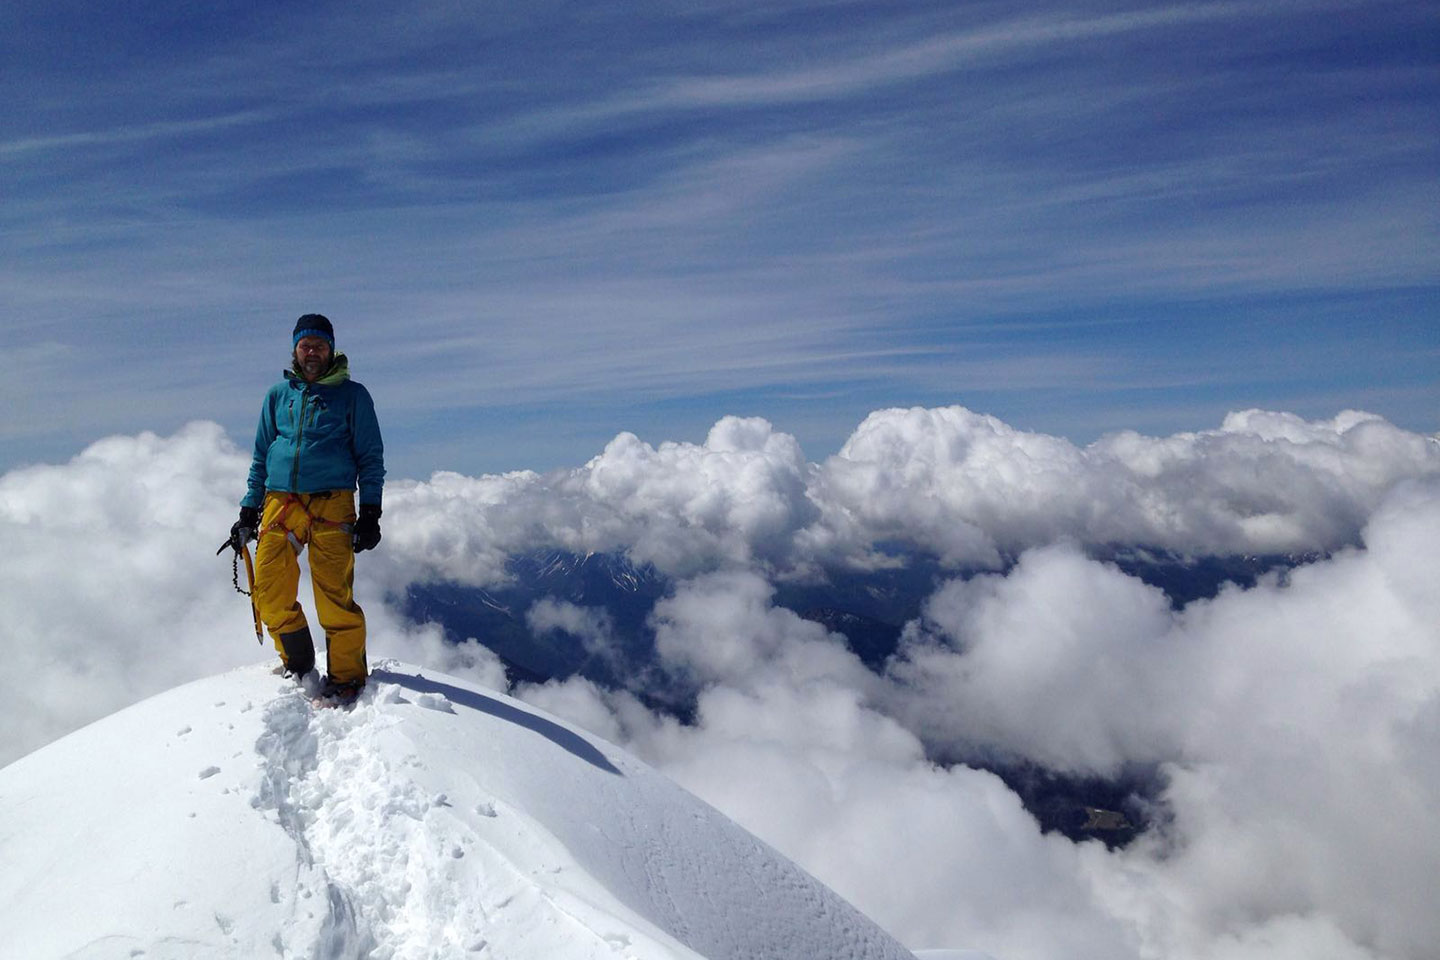 Ski Mountaineering to the Top of Antelao Mountain